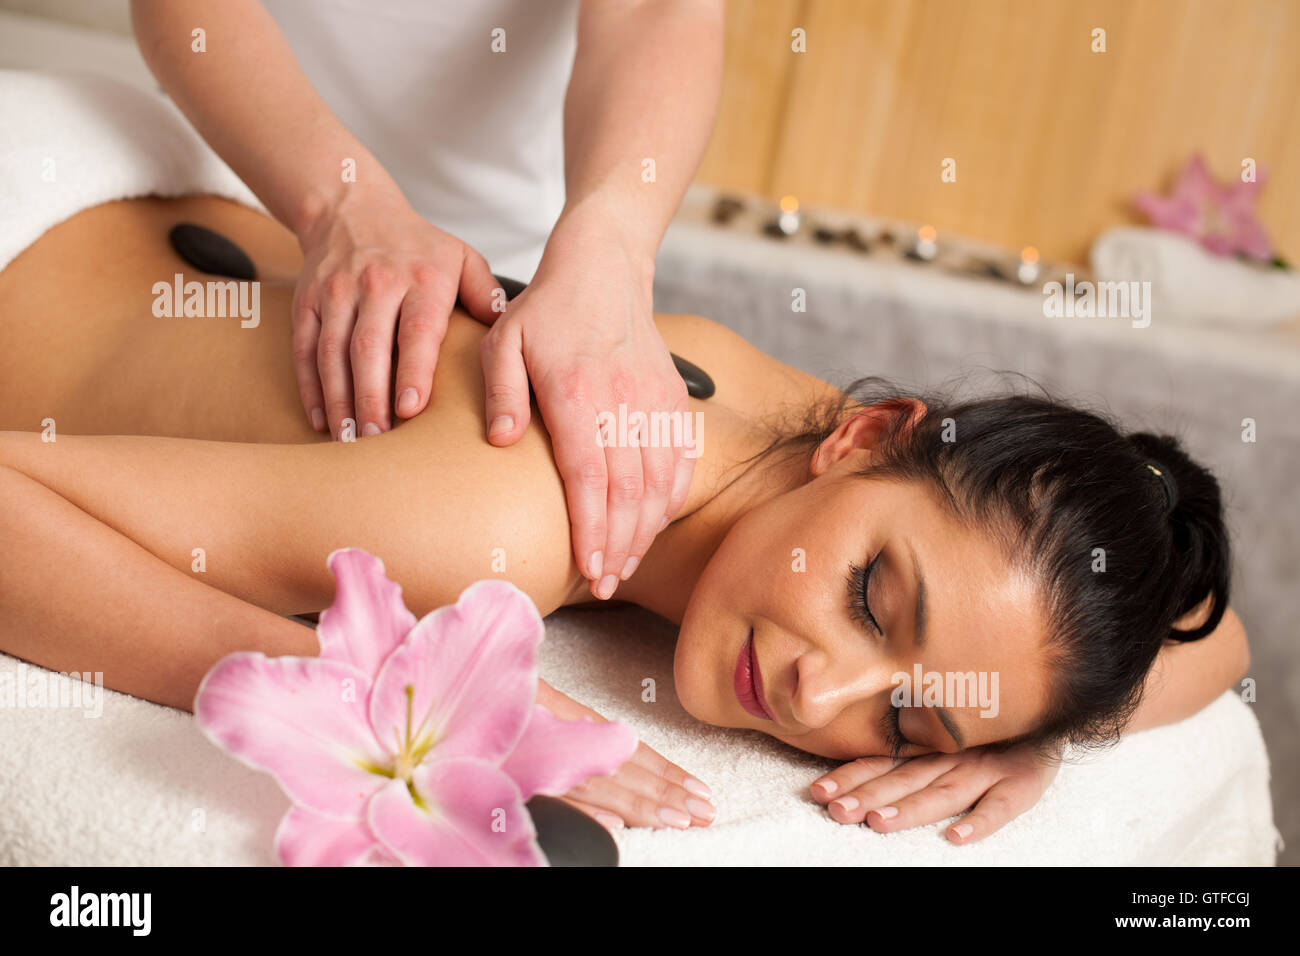 Schöne junge Frau mit einer erholsamen Massage im Wellness-Studio - Wellness Stockfoto